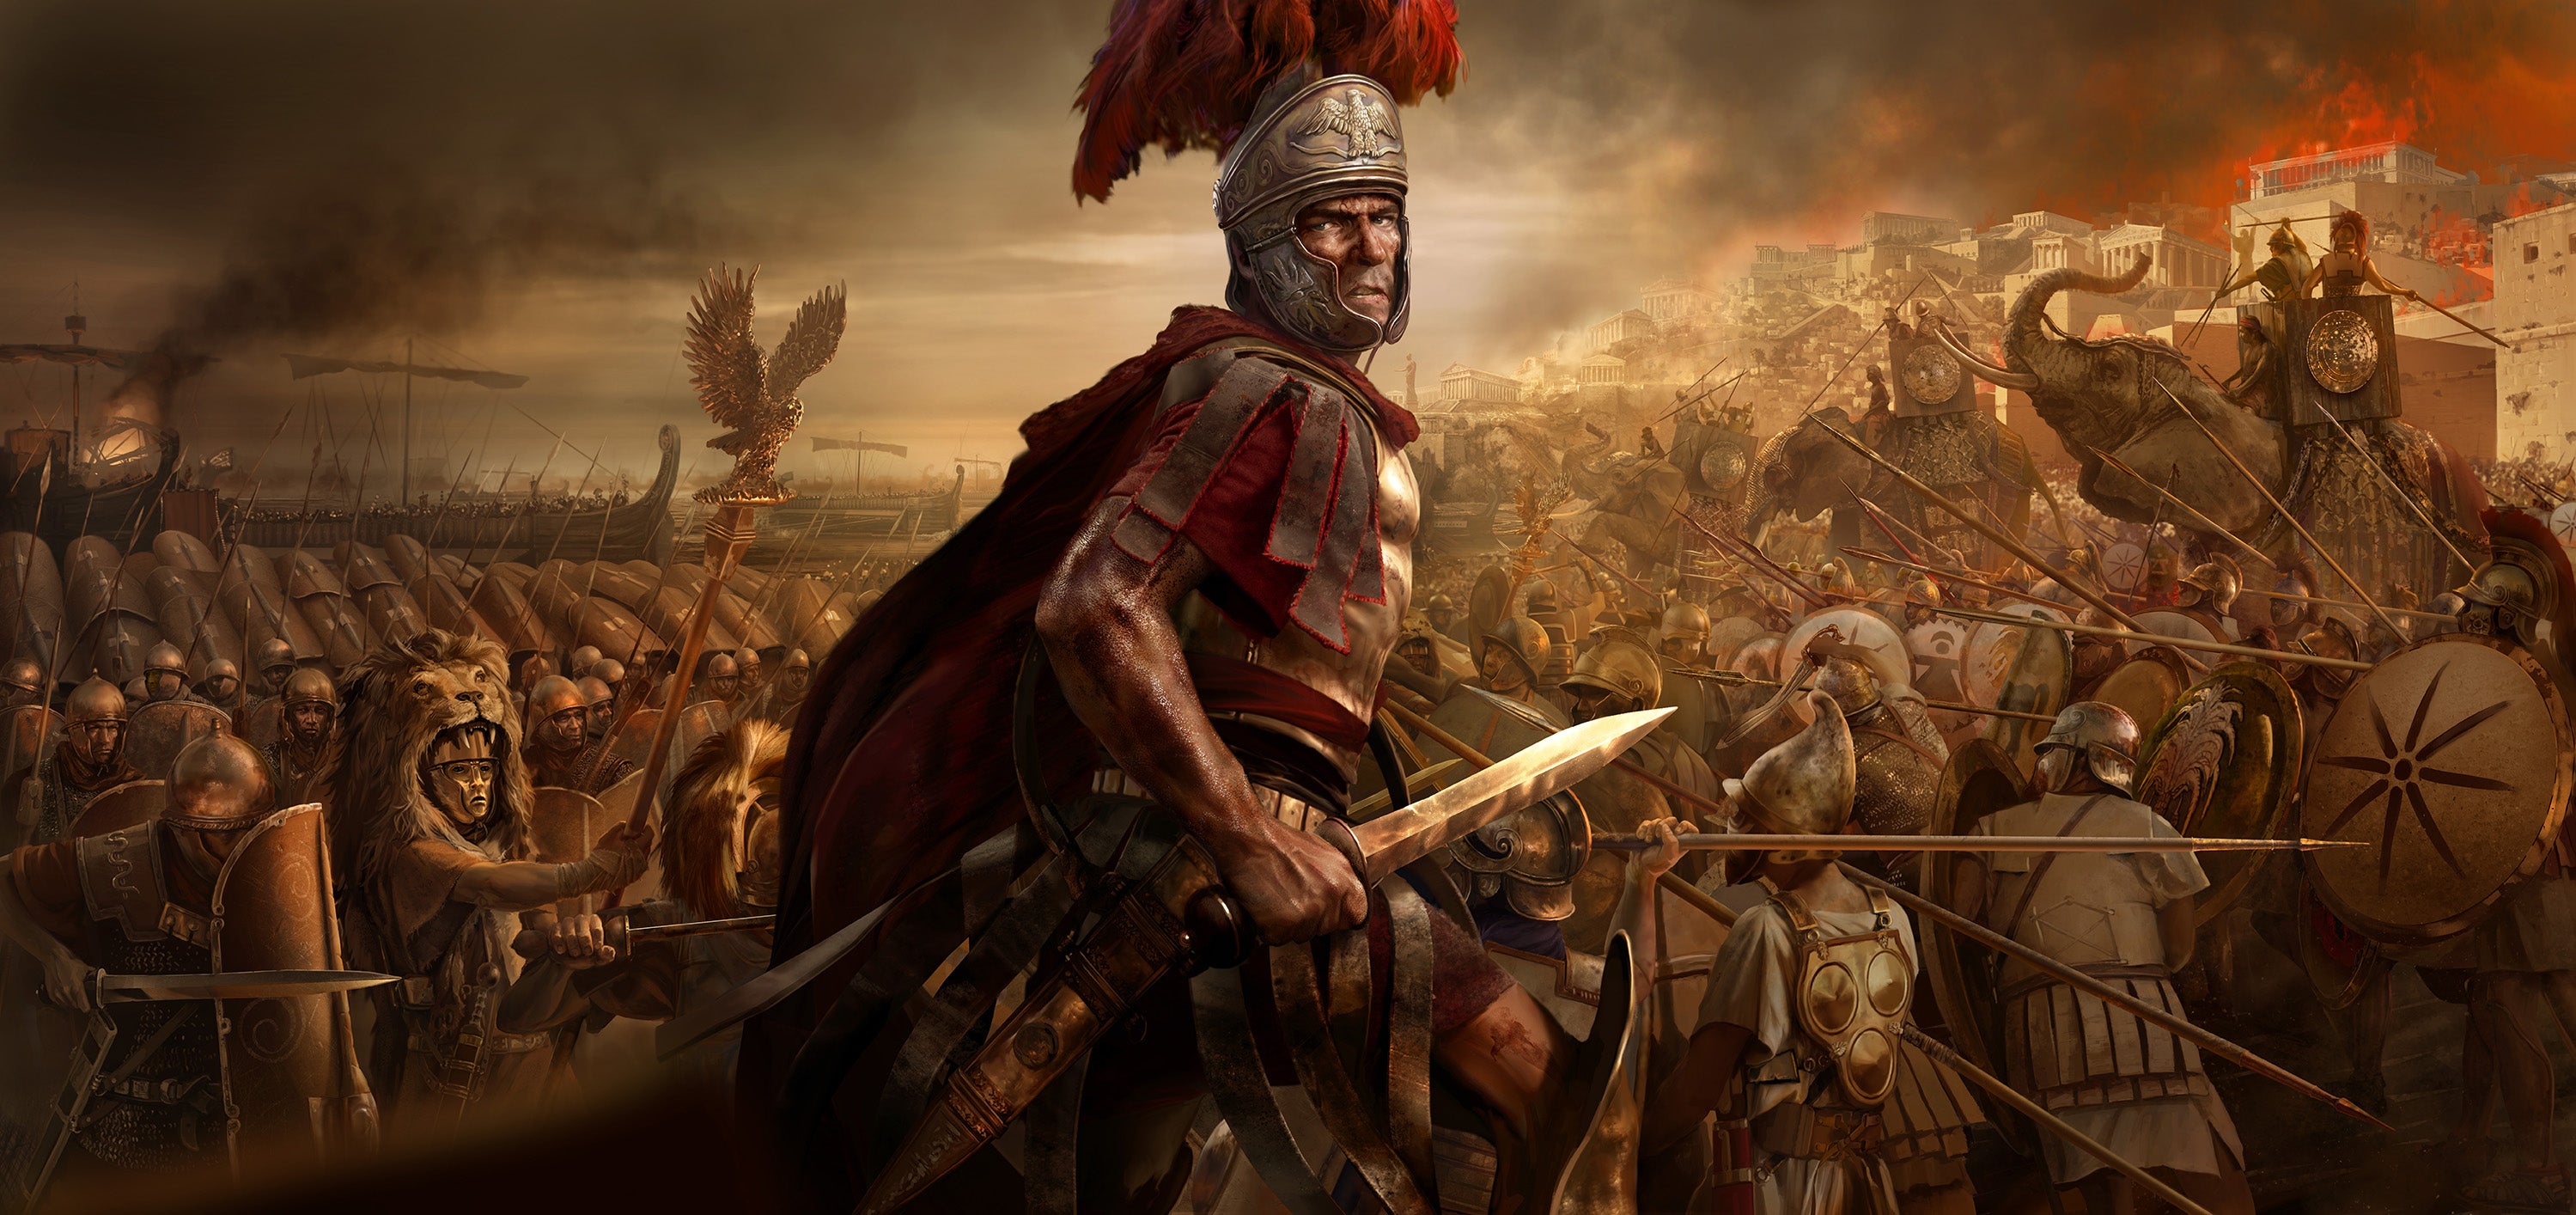 Obrazki dla Total War: Rome 2 - Recenzja